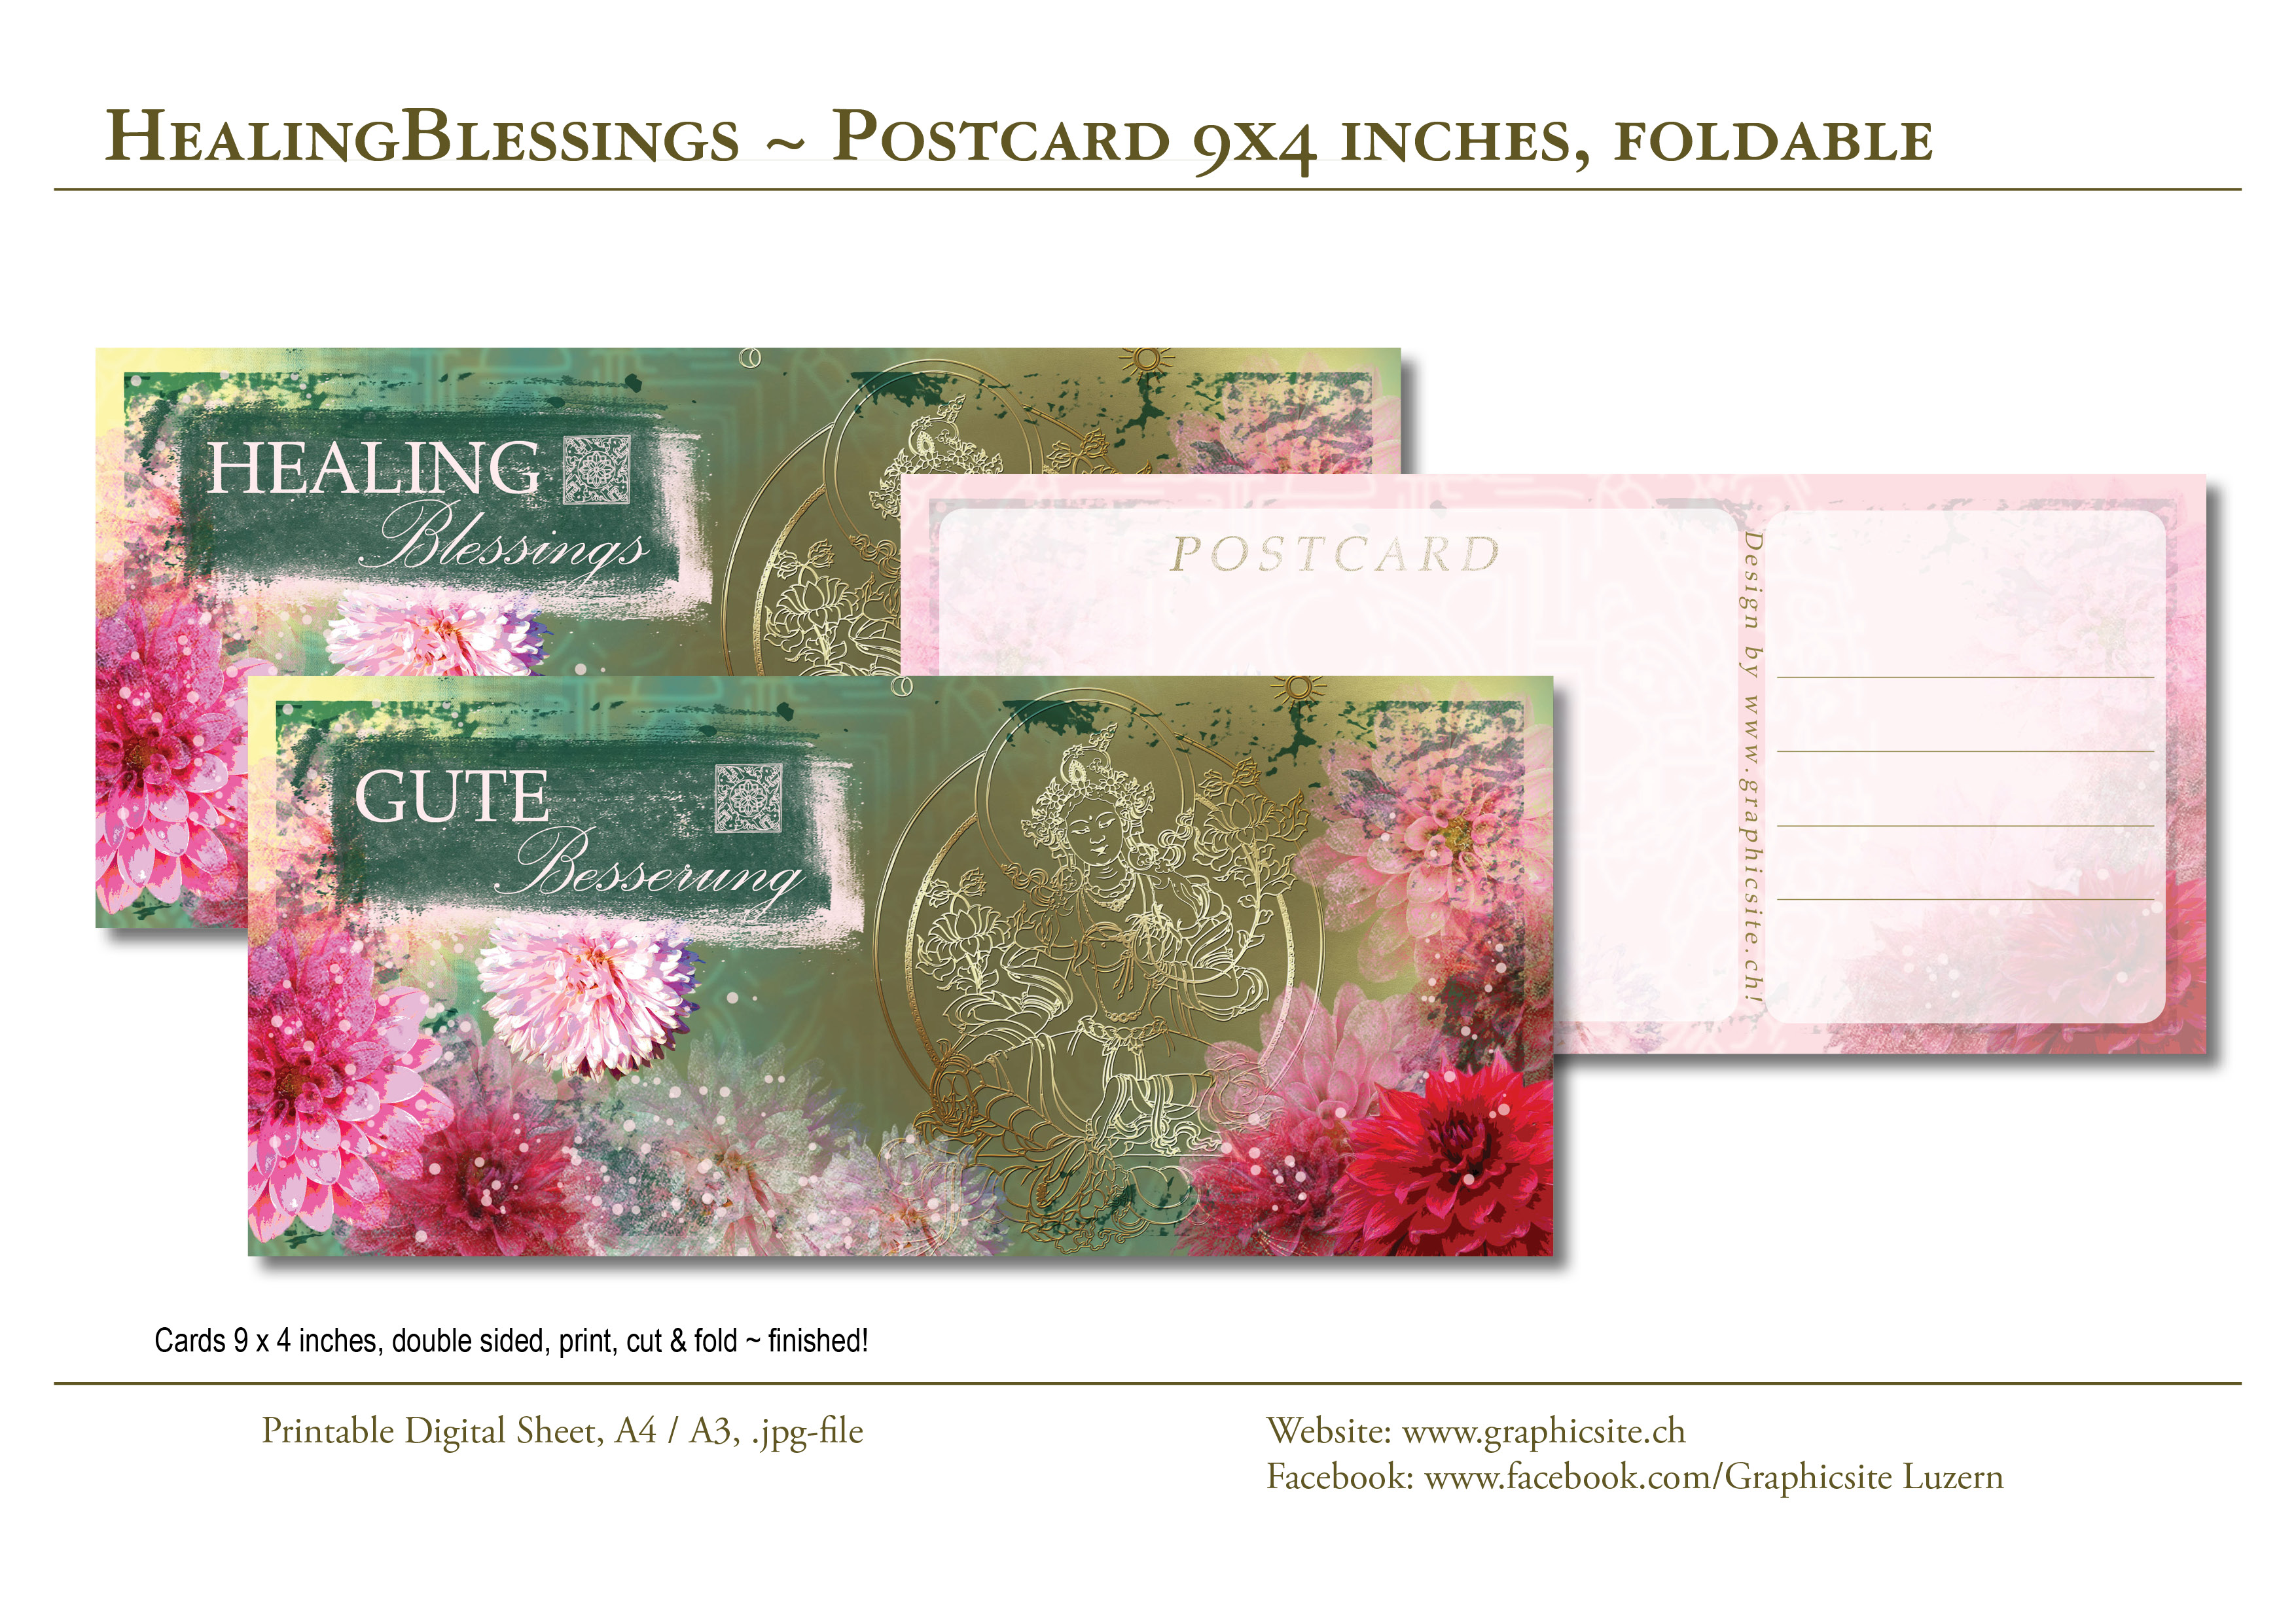 Grafiker Luzern - Karten selber drucken - Postkarten 9x4 Zoll - Luzern, #Blumen, Dhalien, GuteBesserung, #Postkarten, #Karten, #basteln, #Grusskarten,